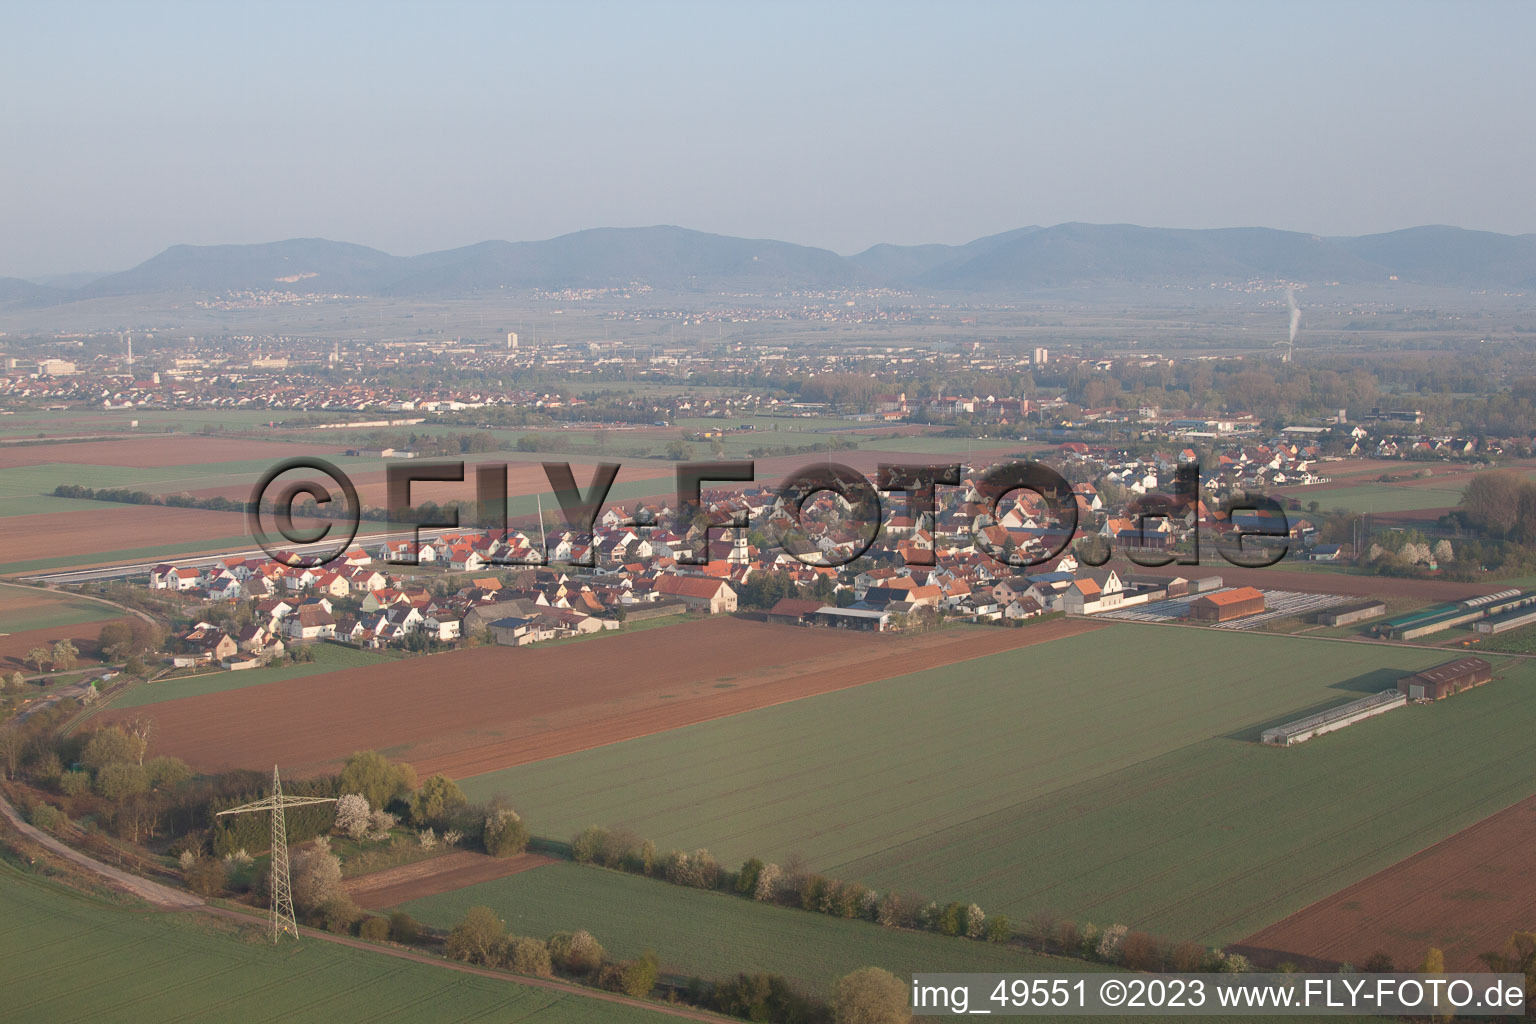 Quartier Mörlheim in Landau in der Pfalz dans le département Rhénanie-Palatinat, Allemagne vu d'un drone